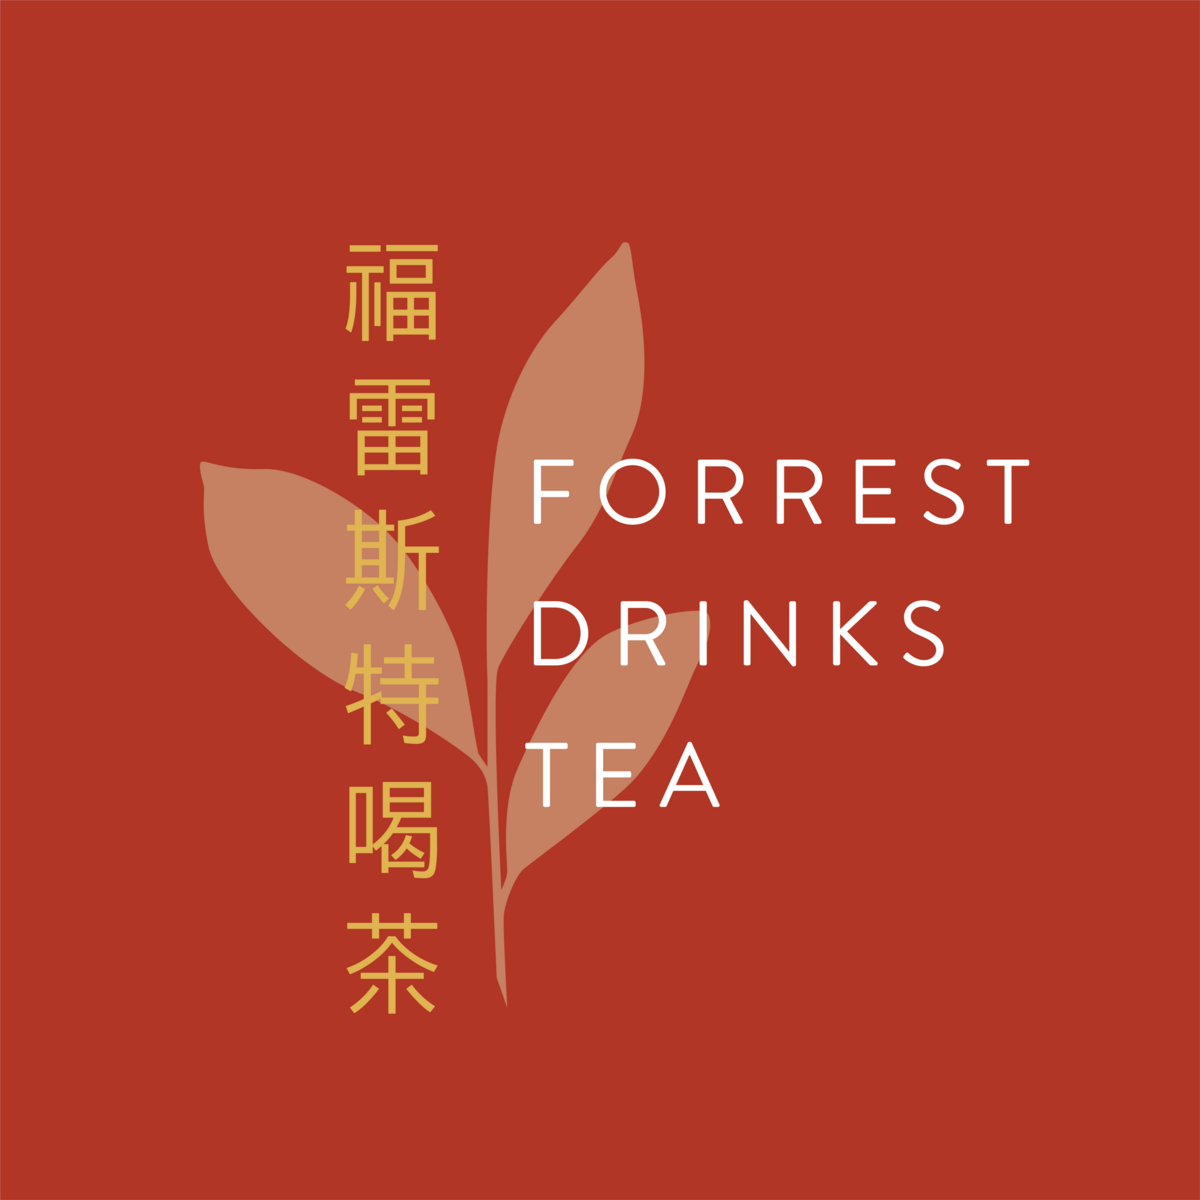 Forrest-Drinks-Tea-final-red